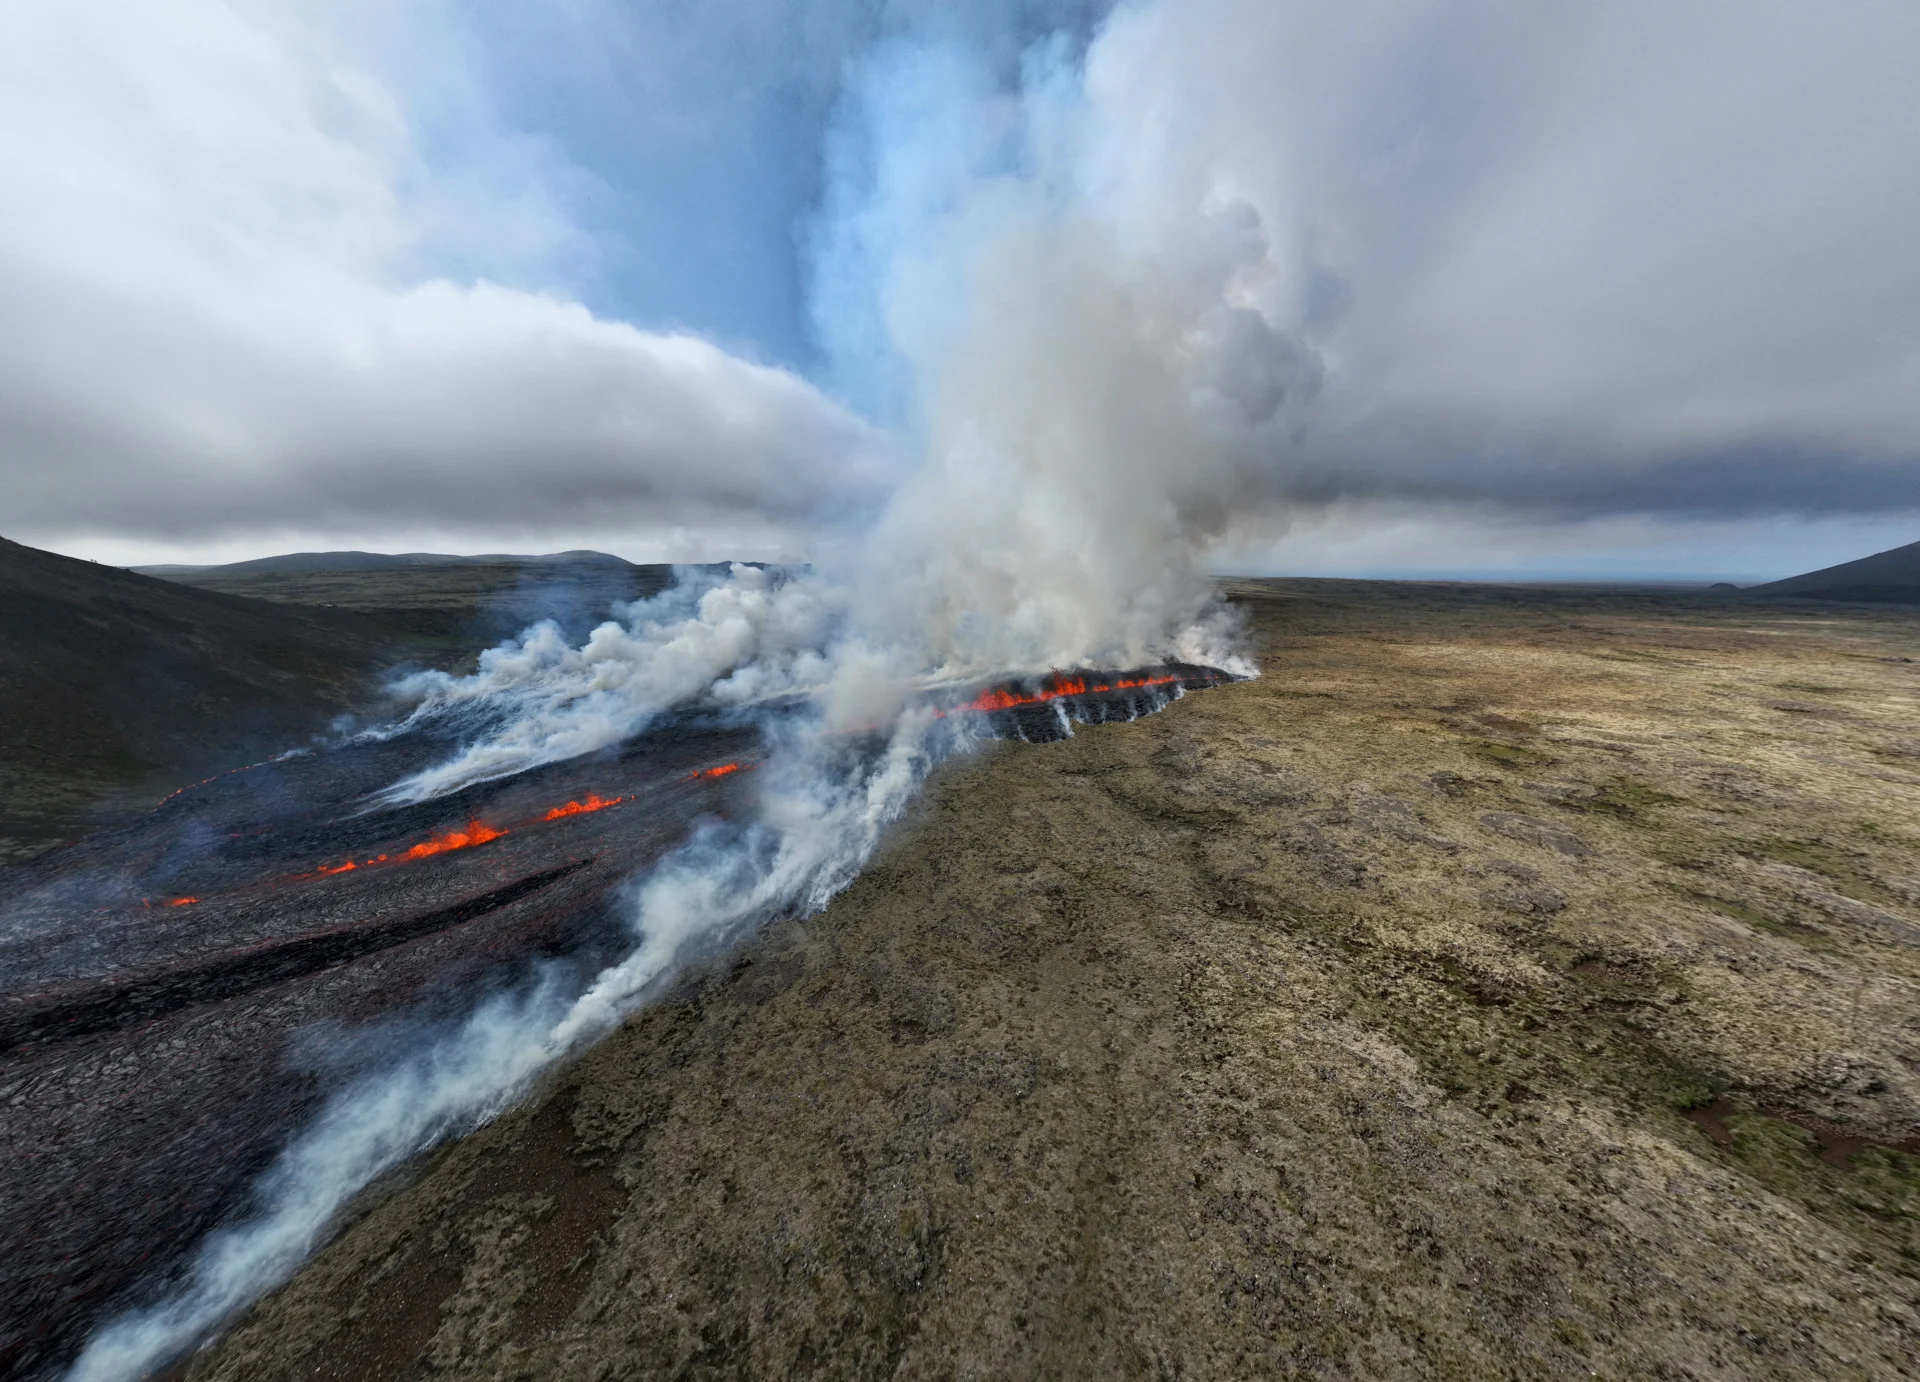 Reuters: El humo y la lava brotan después de la erupción de un volcán en la península de Reykjanes, cerca de la capital Reykjavík, en el suroeste de Islandia, el 10 de julio de 2023, en esta imagen obtenida de las redes sociales.  Jurgen Merz - Artista de fotografía de hielo/a través de Reuters